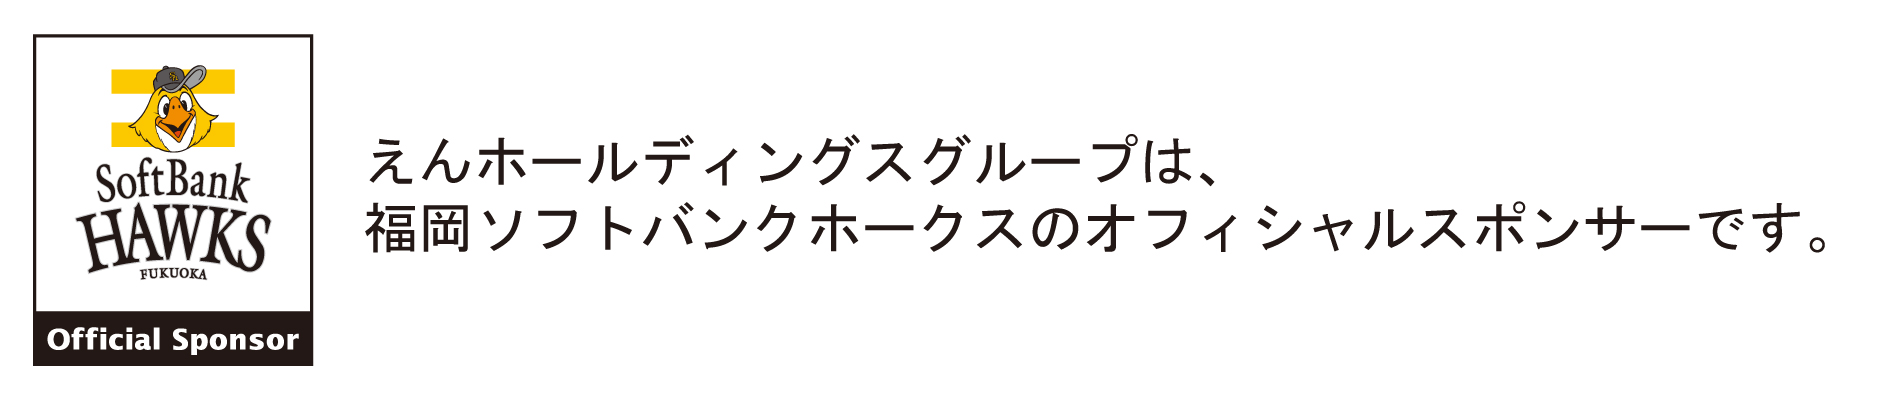 えんホールディングスグループは、福岡ソフトバンクホークスのオフィシャルスポンサーです。